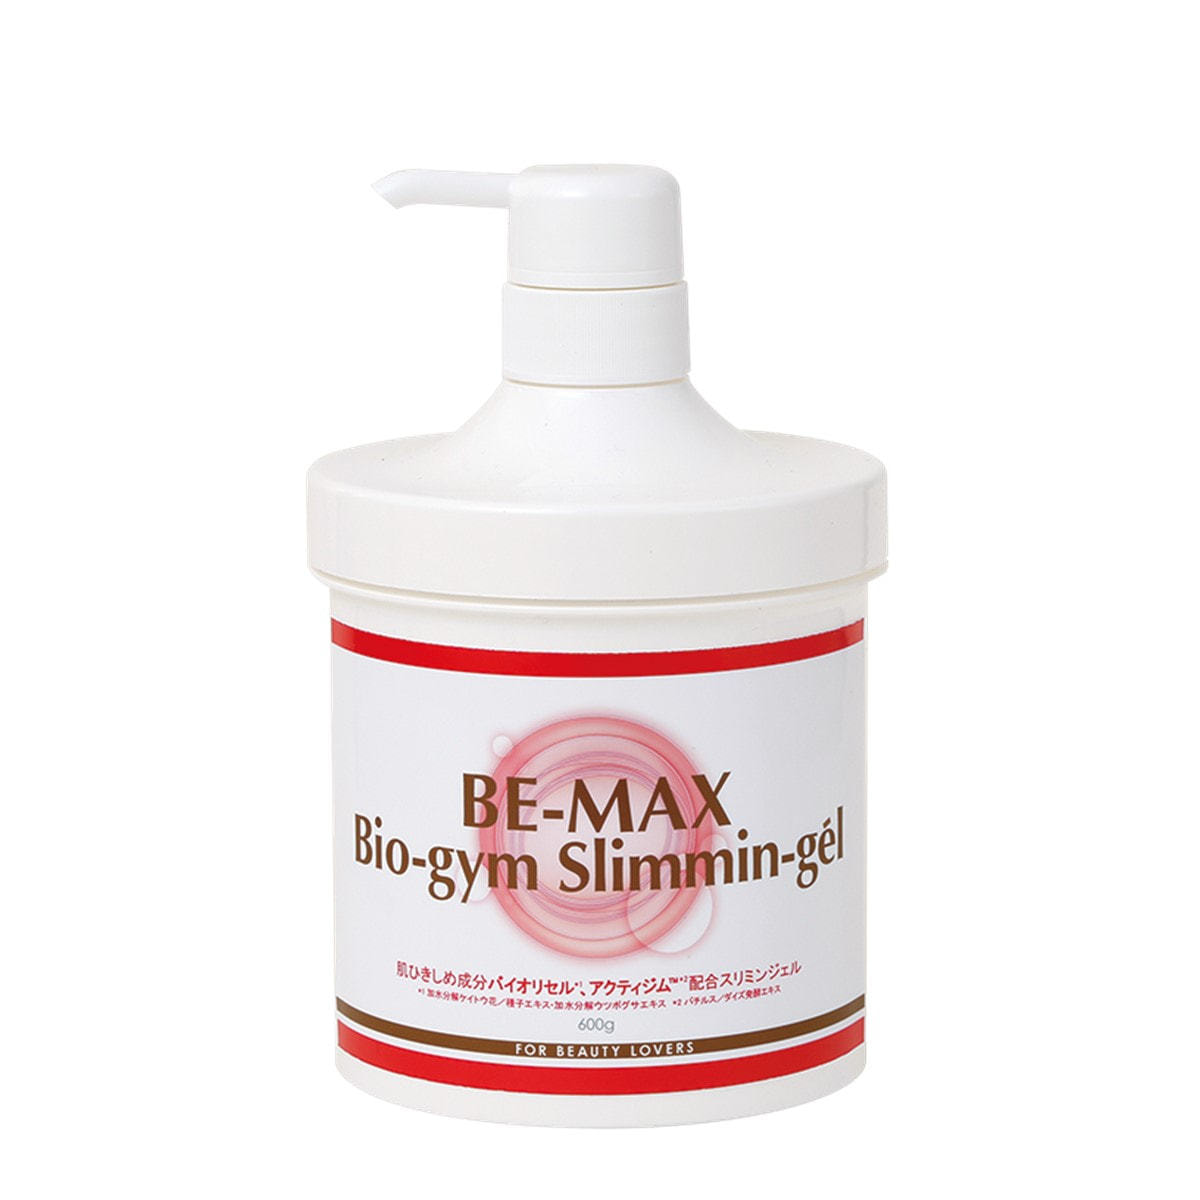 BE-MAX（ビーマックス）バイオジム スリミンジェル（Bio-gym Slimmin-gel）600g